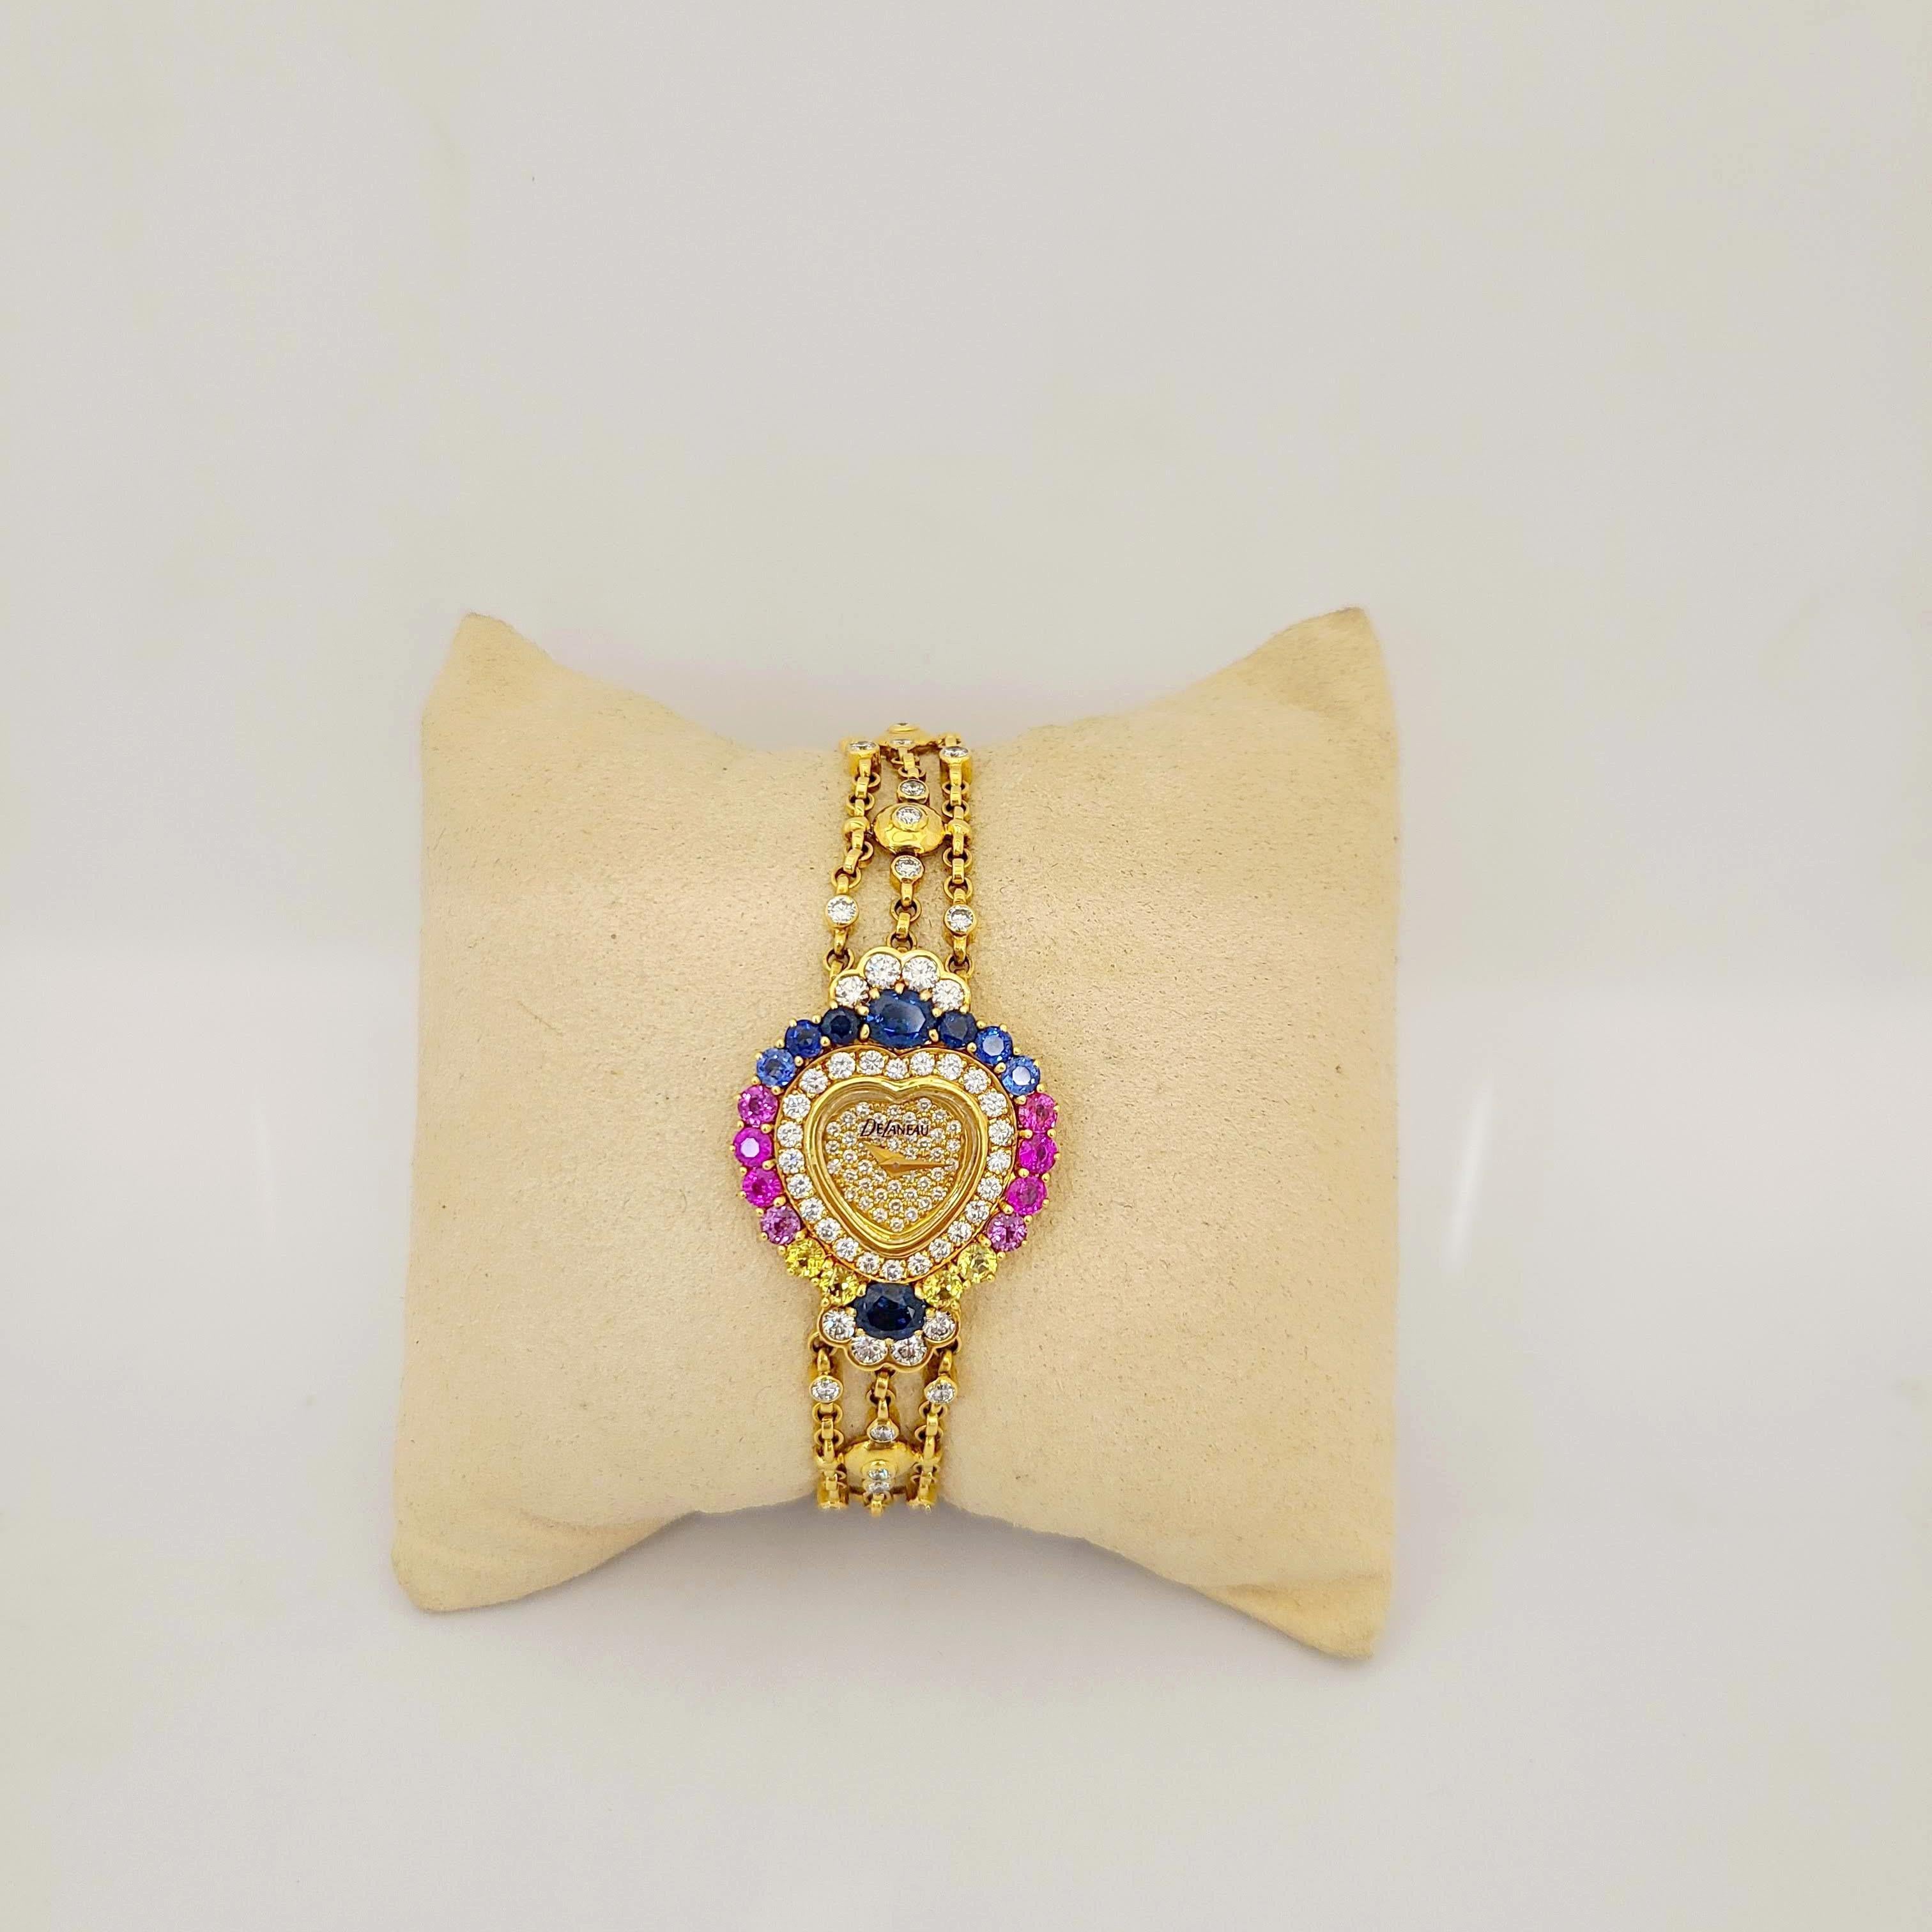 DeLaneau a été fondée par une femme en 1949 en Suisse.  Elle est l'une des premières entreprises horlogères à consacrer l'intégralité de sa collection à des montres pour femmes.
Le cadran de cette montre en forme de cœur en or jaune 18 carats est